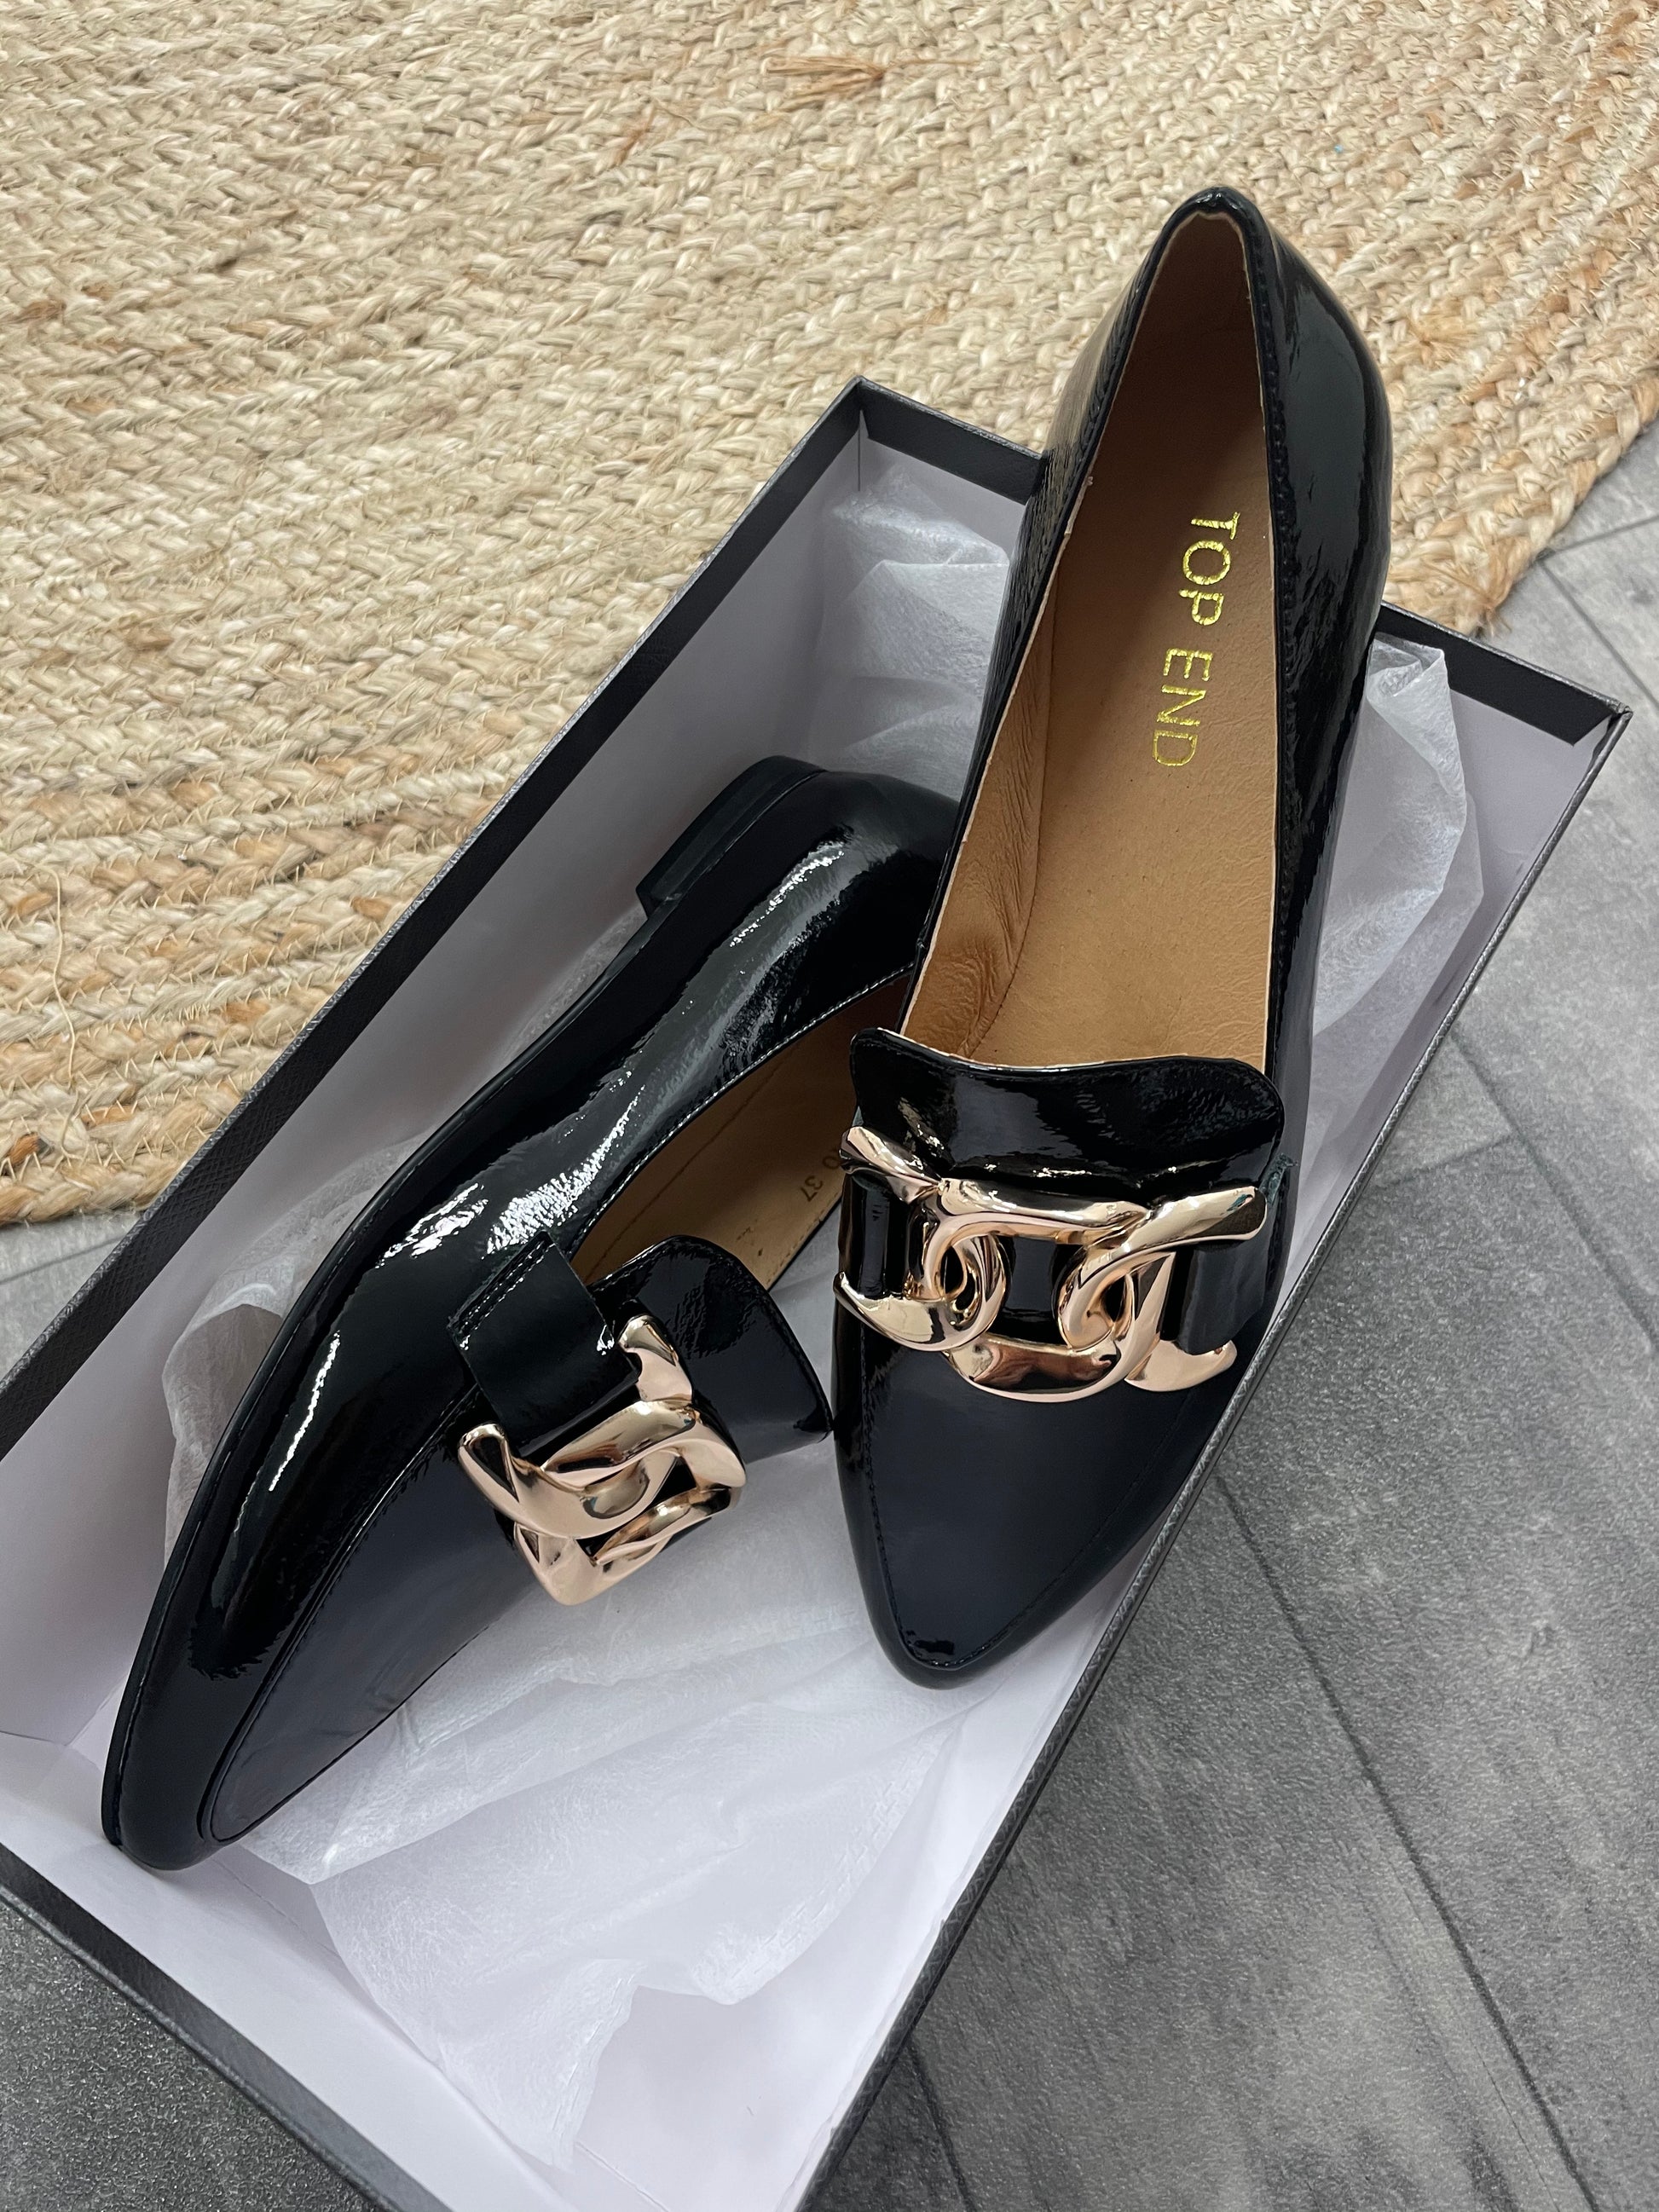 Socoro Patent Leather - Emelda's Shoes